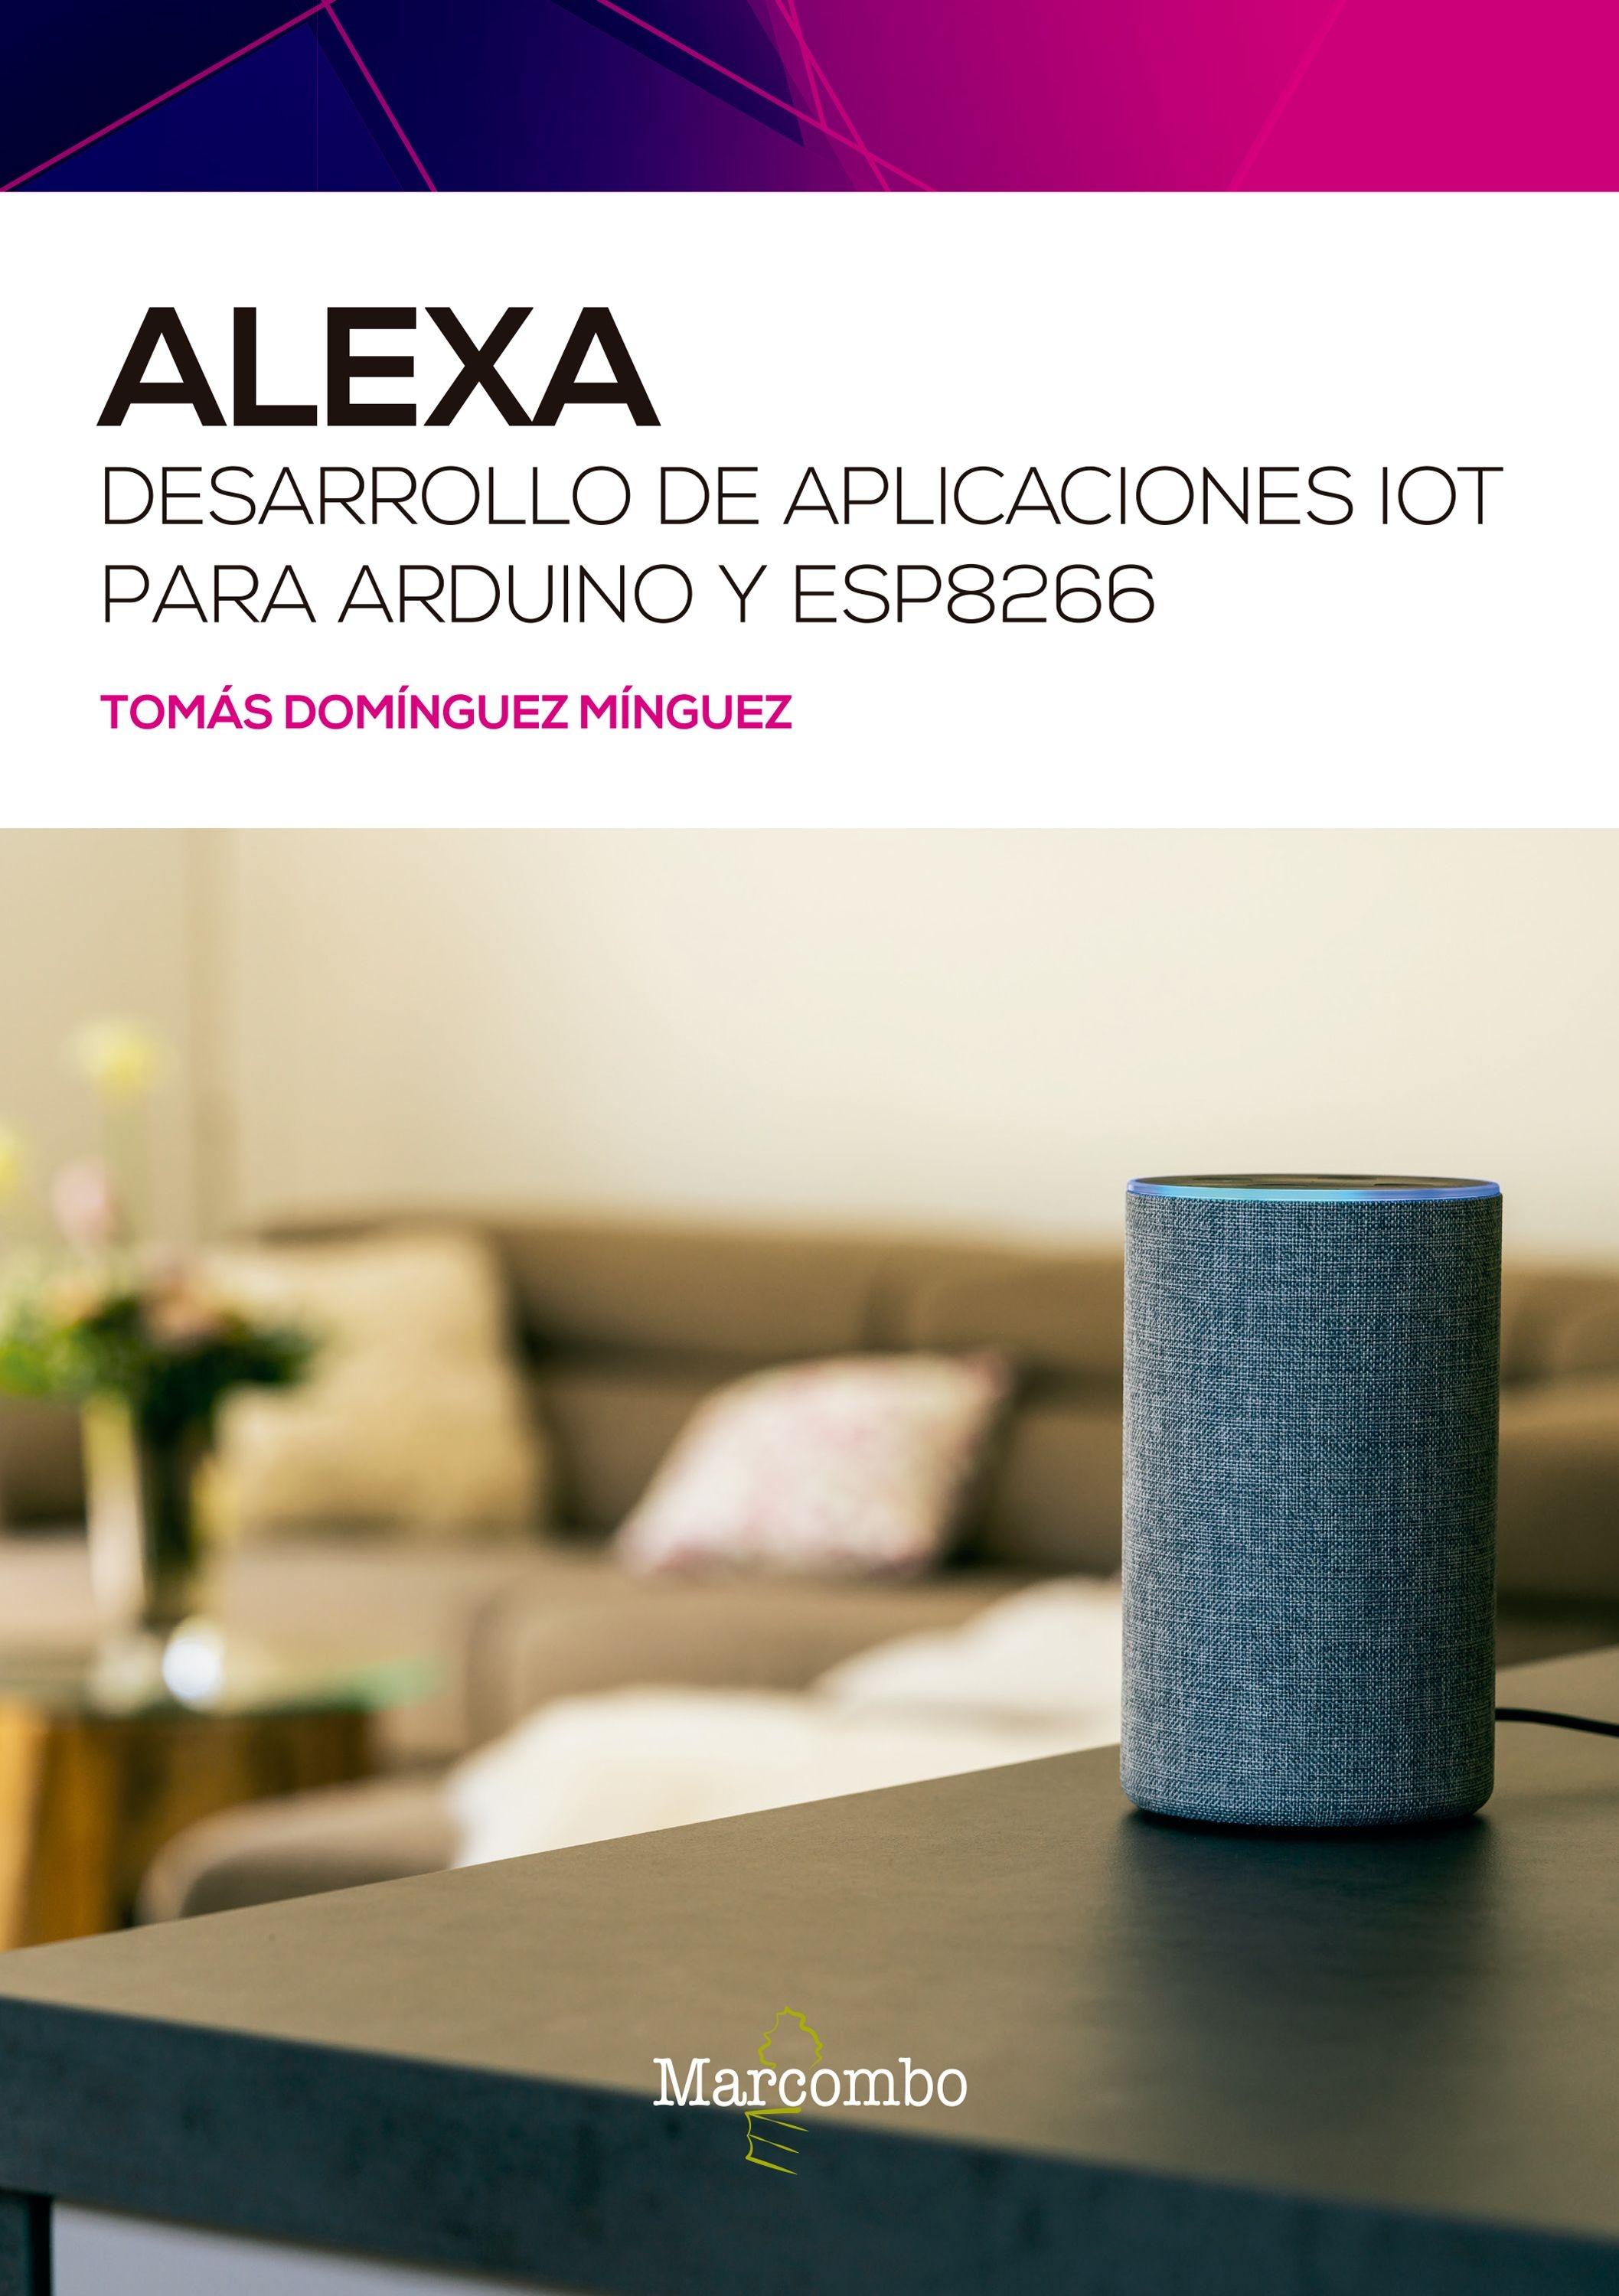 ALEXA "Desarrollo de aplicaciones para Arduino y ESP8266"